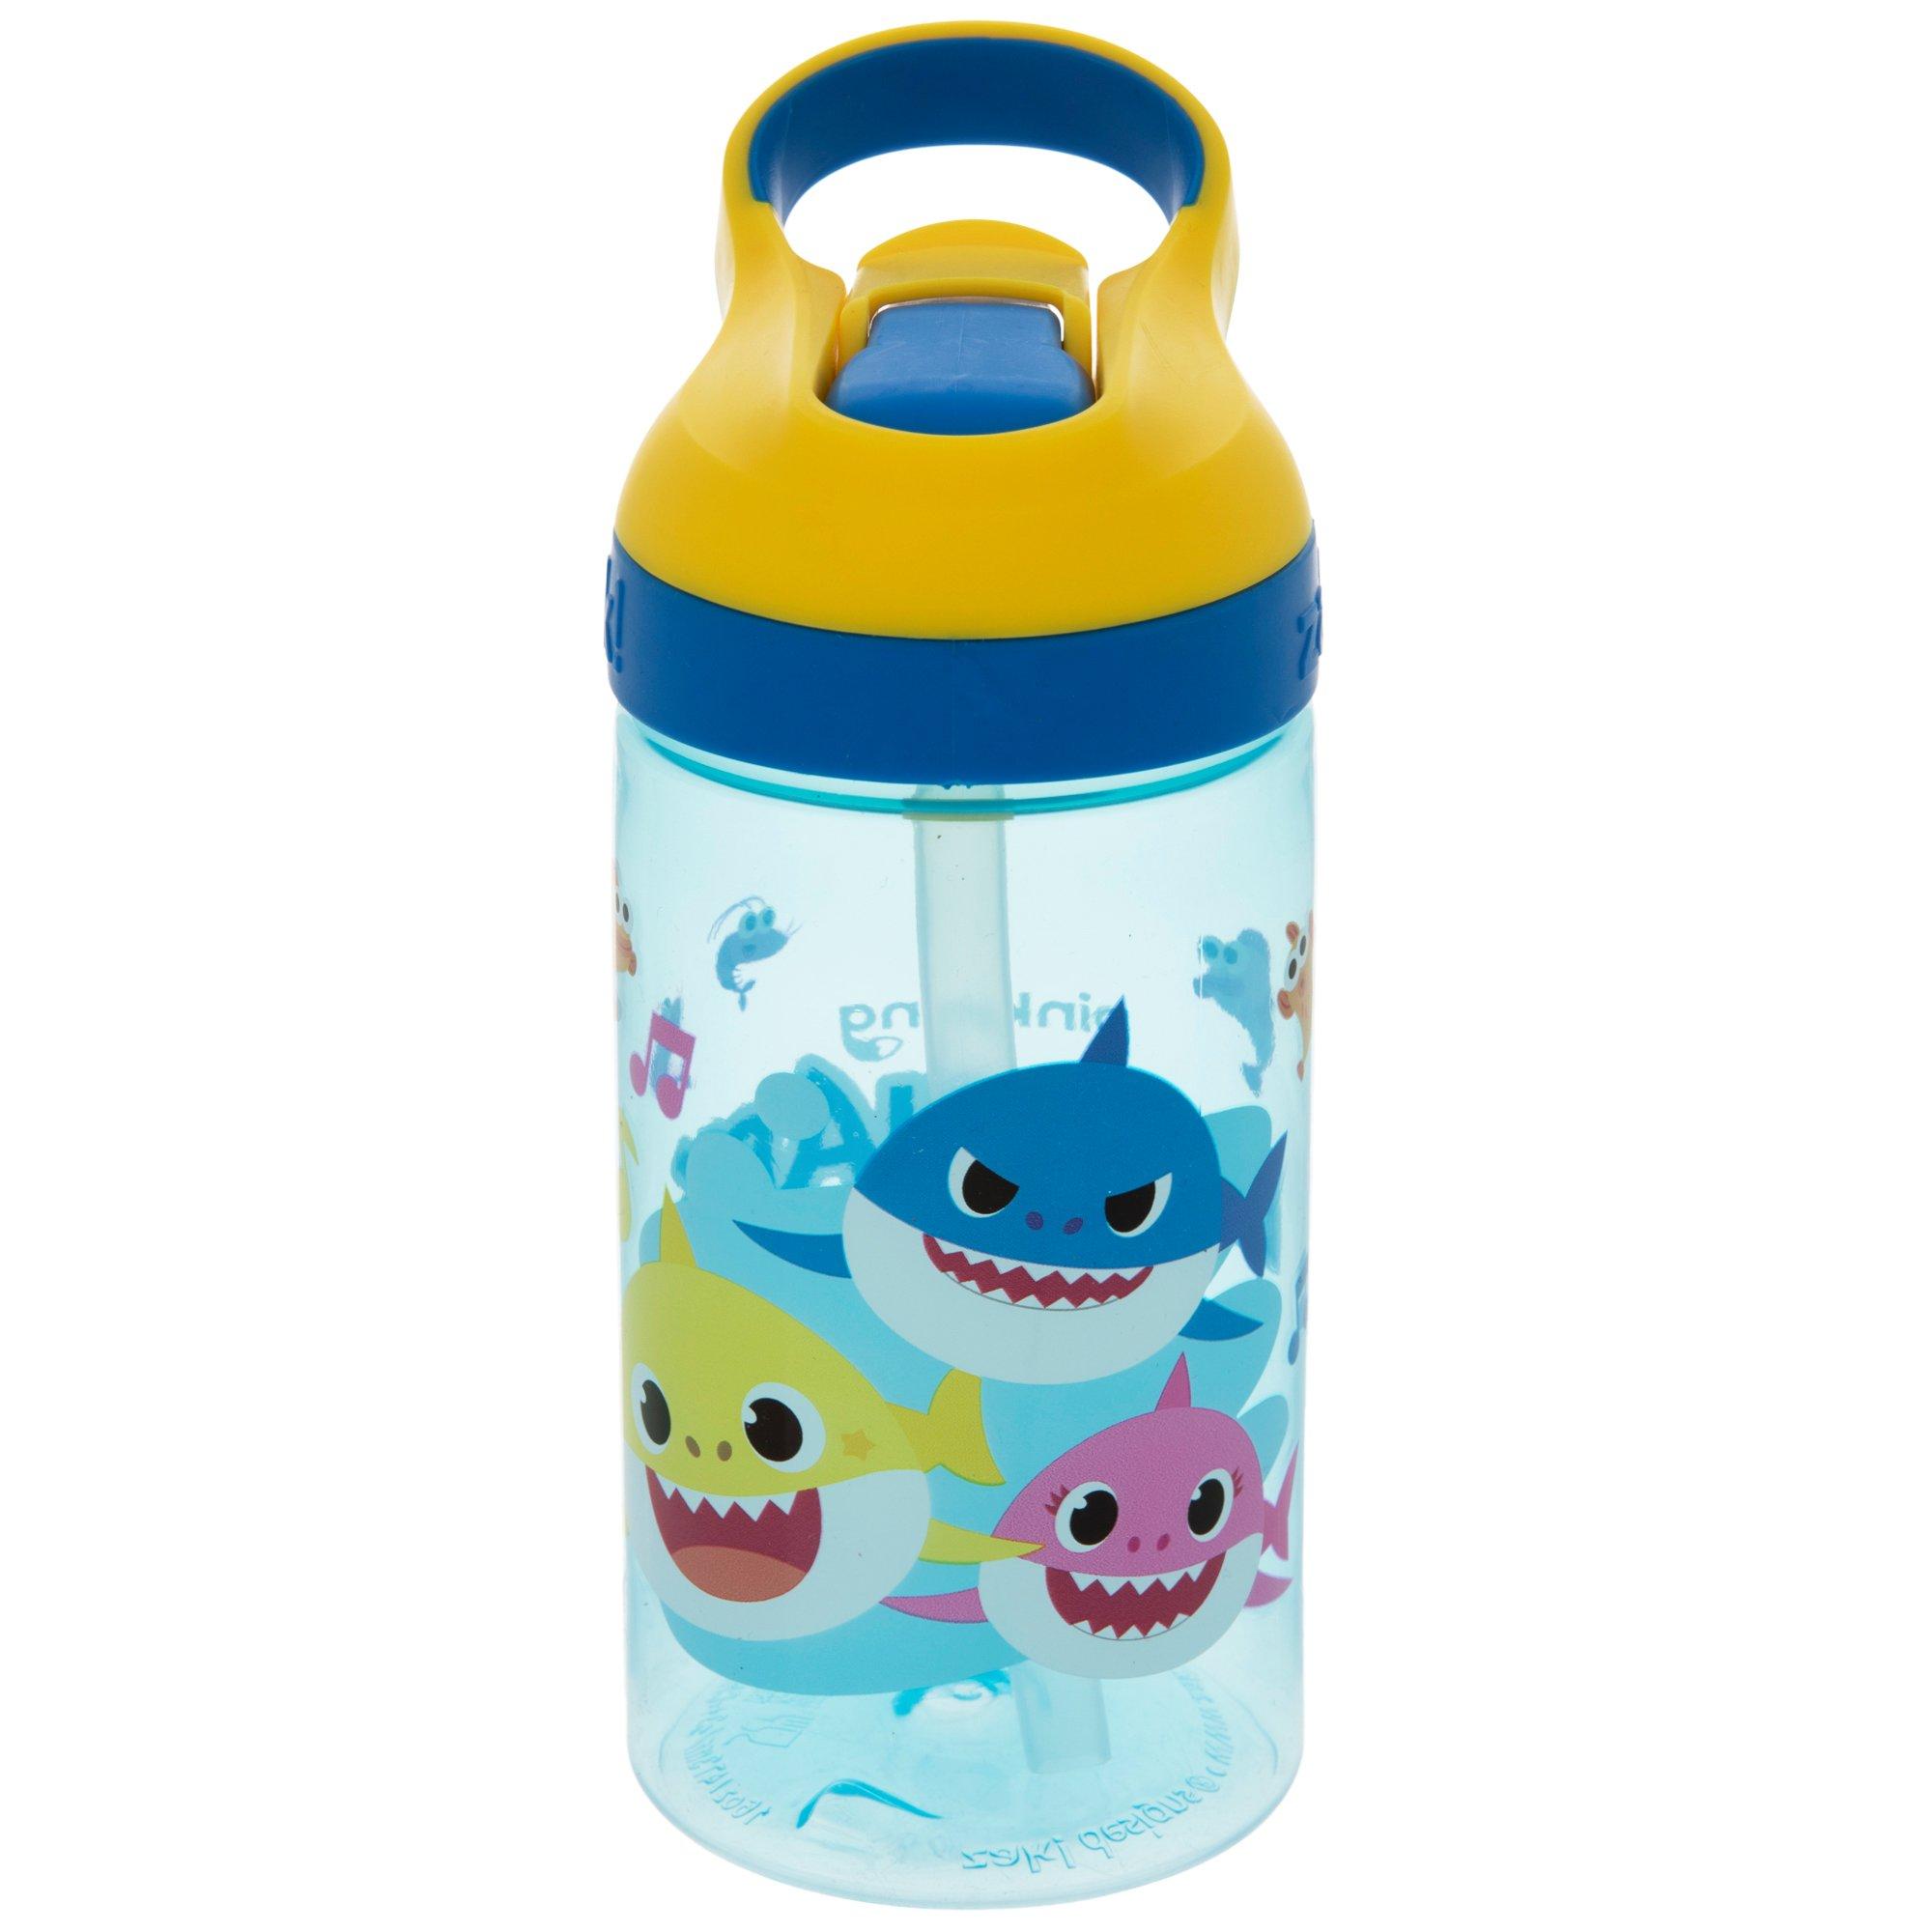 Baby Shark Water Bottle, Hobby Lobby